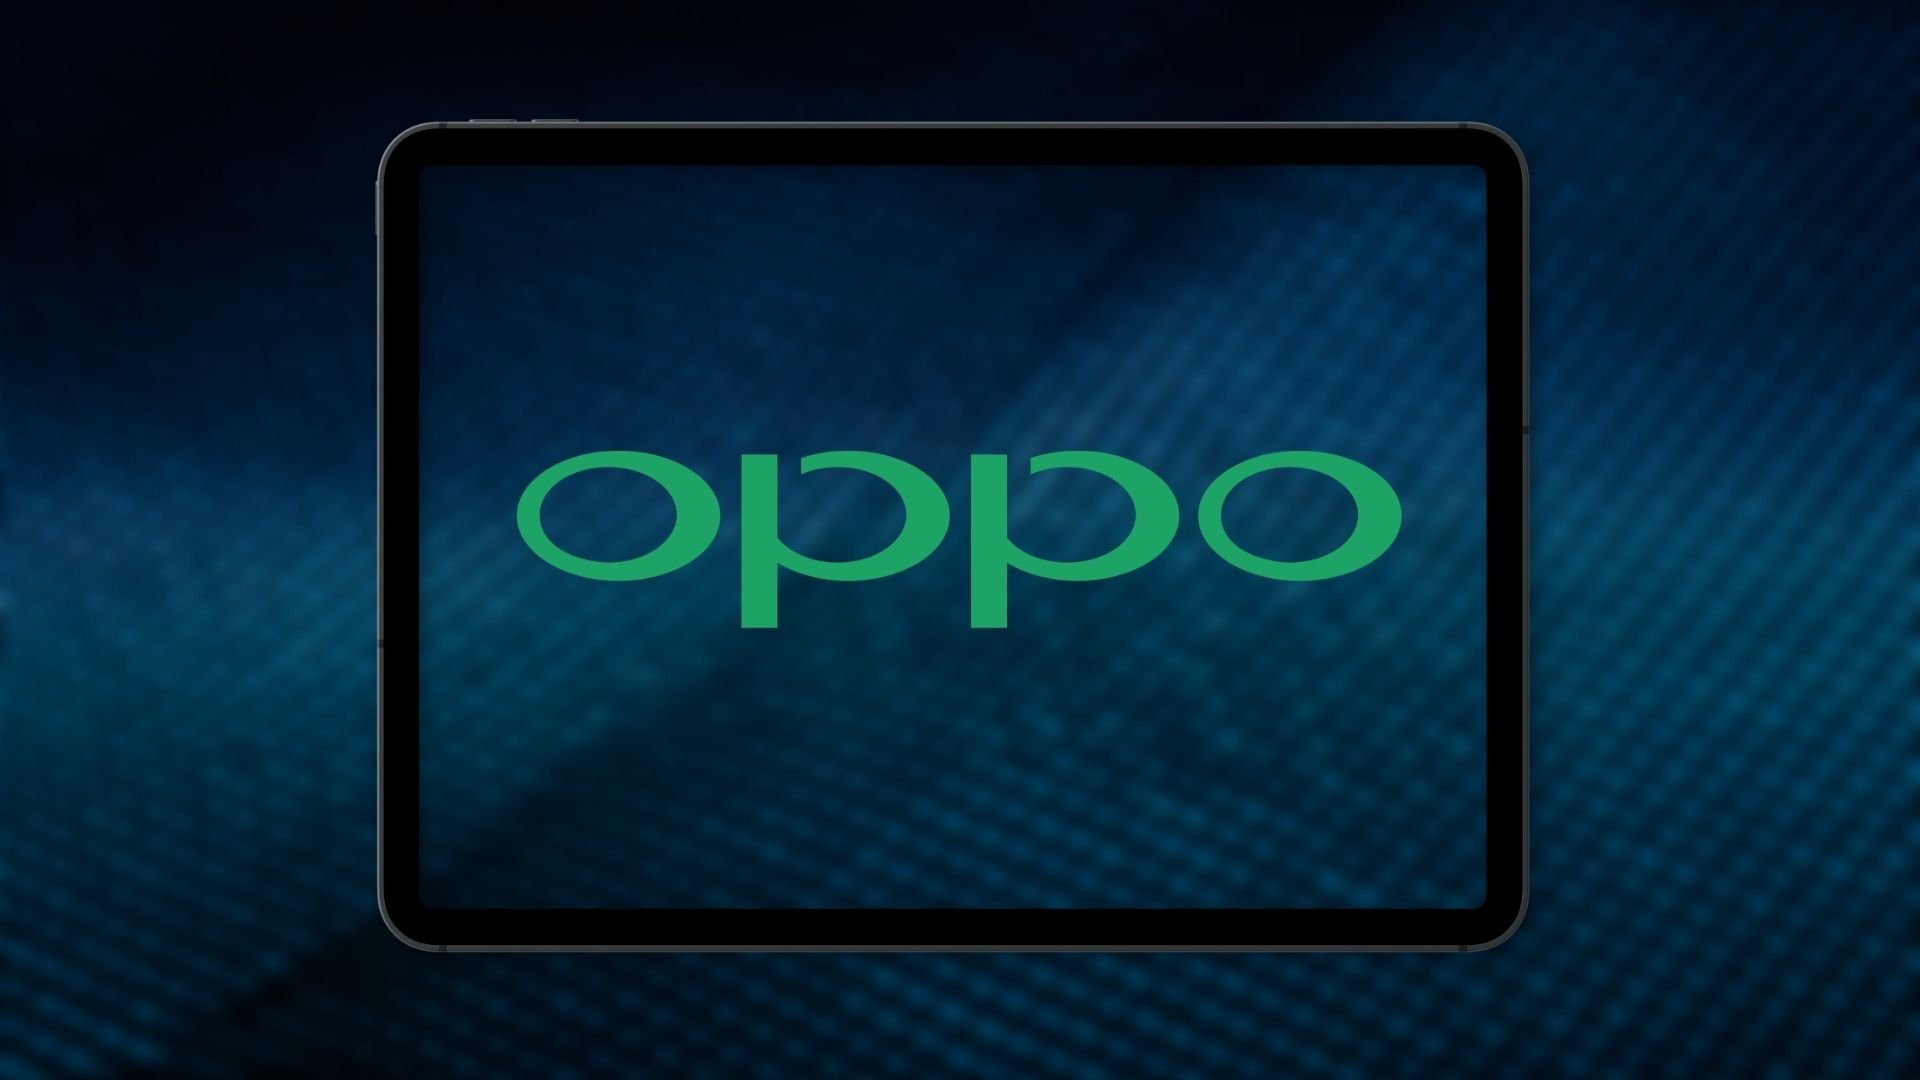 Oppo iki cihazı hakkında güzel haberler verdi